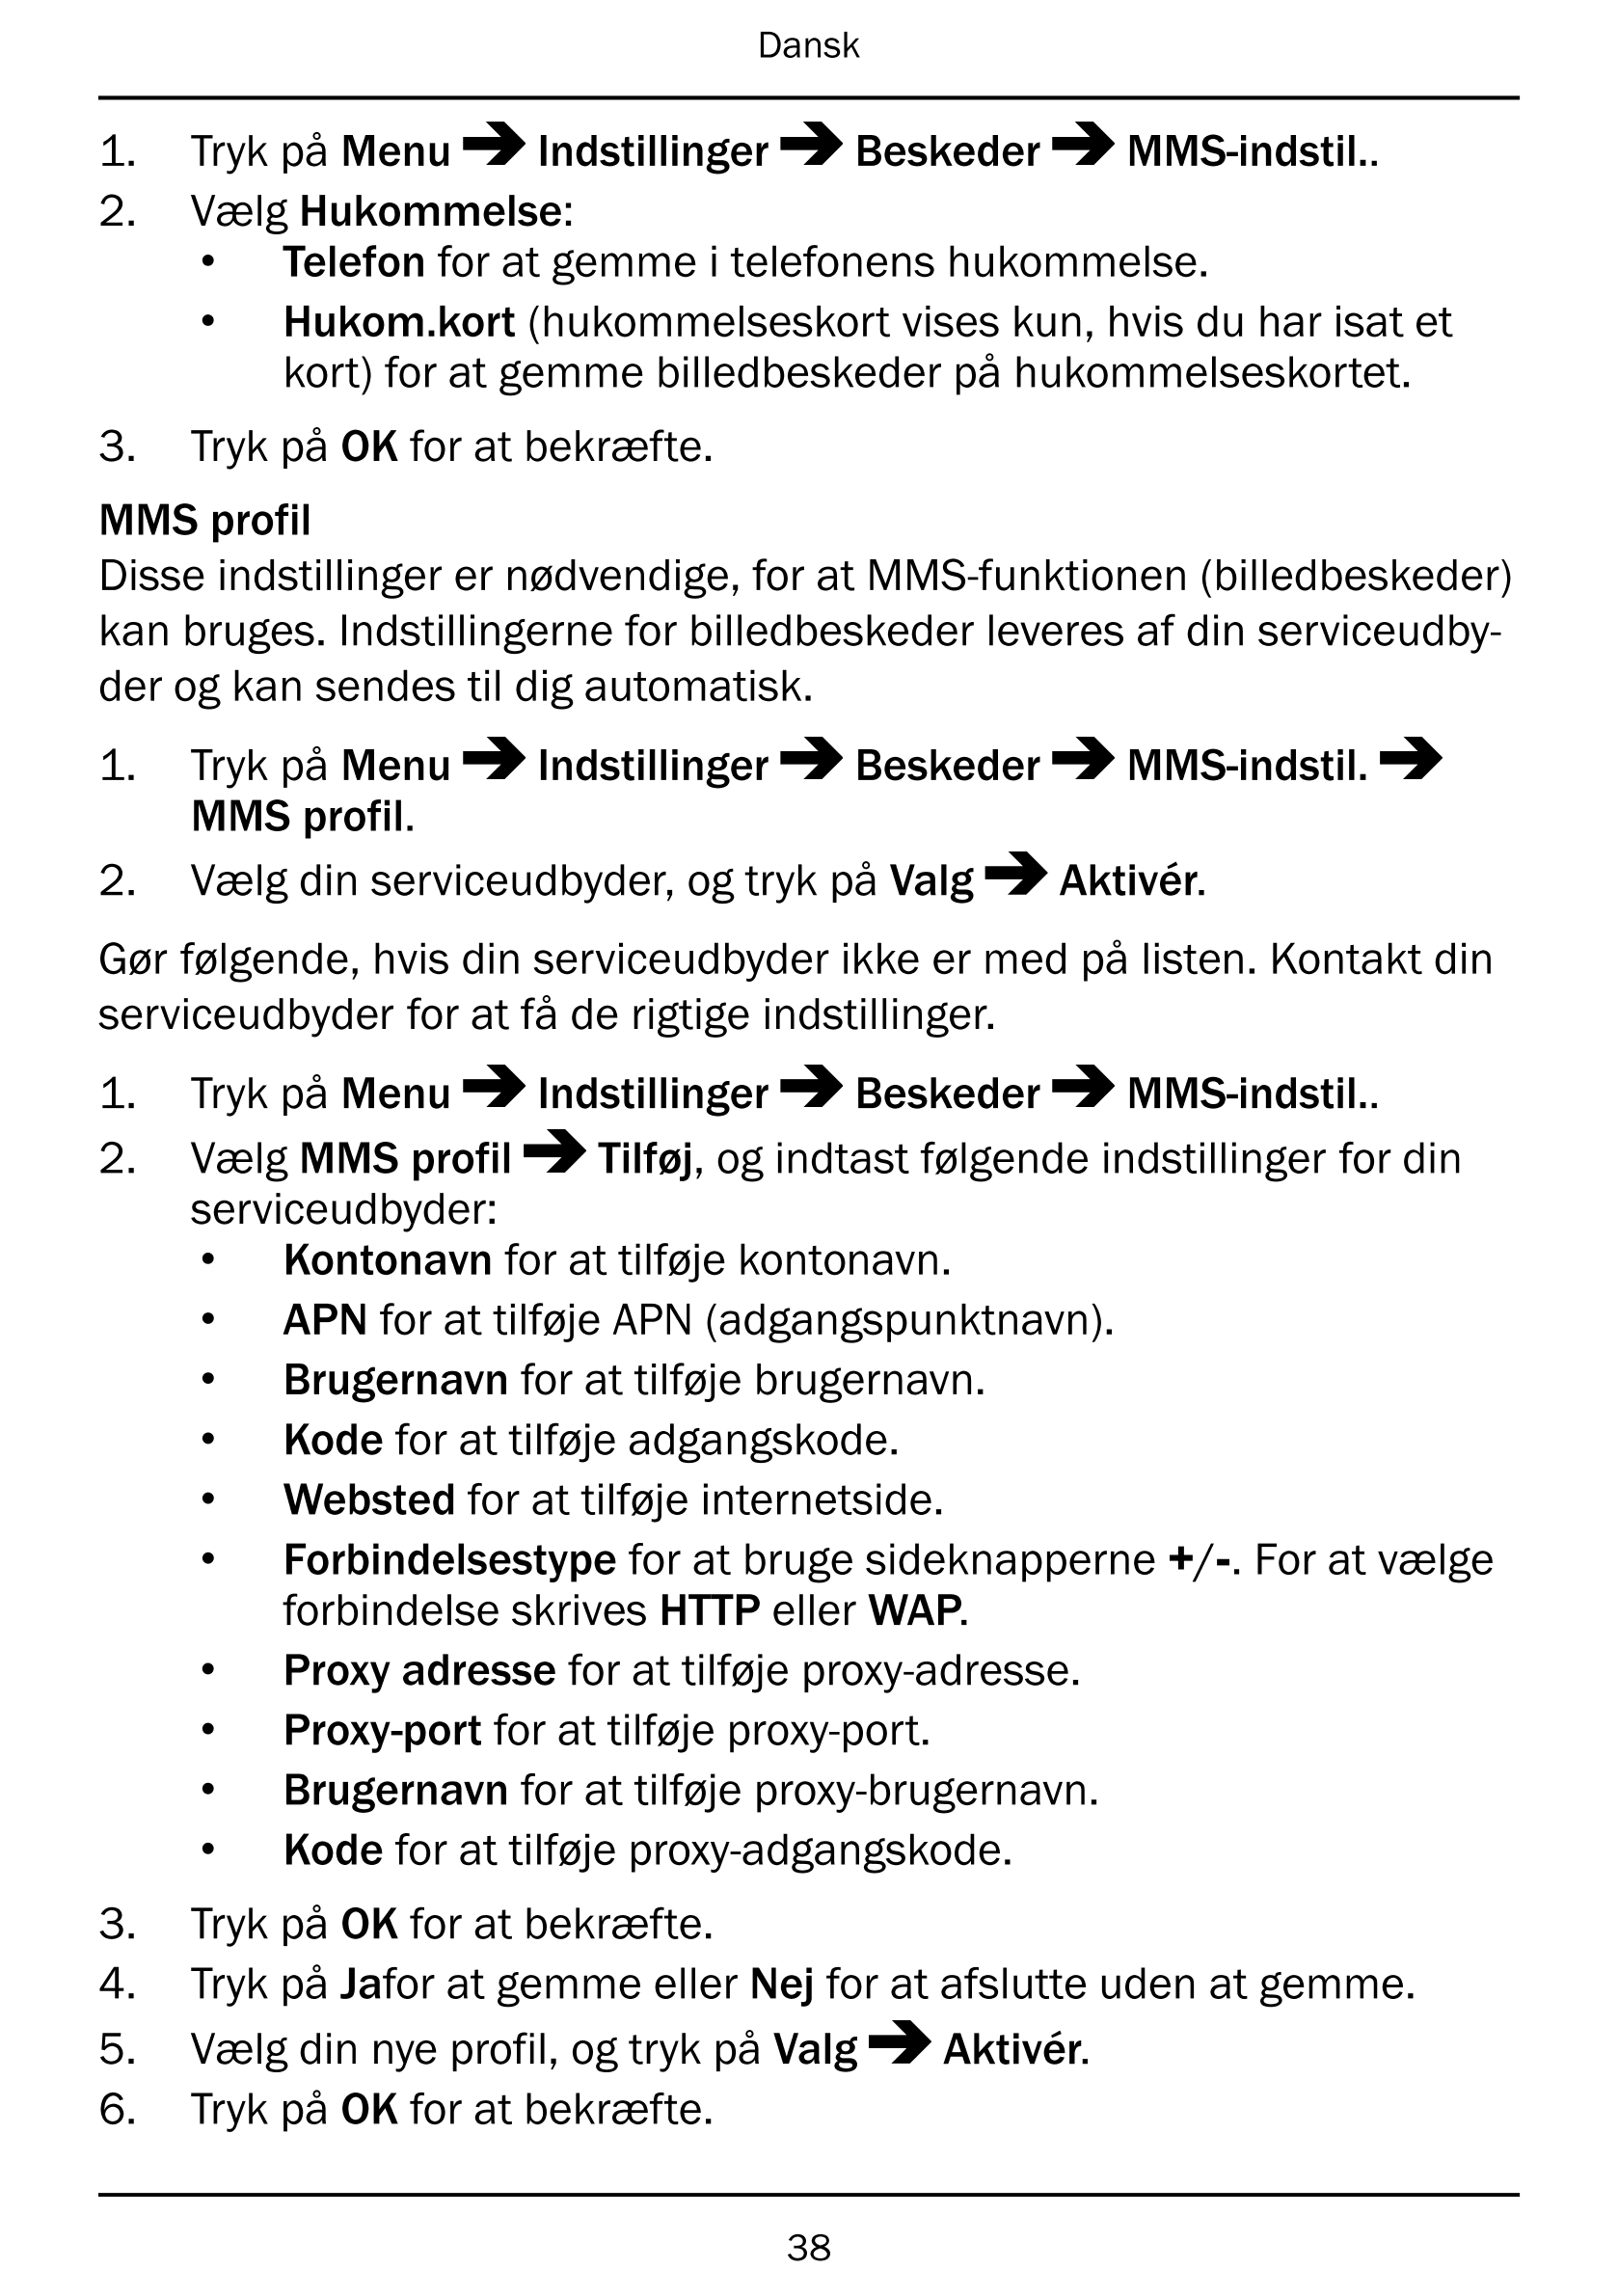 Dansk
1.     Tryk på Menu Indstillinger Beskeder MMS-indstil..
2.     Vælg Hukommelse:
• Telefon for at gemme i telefonens hukom